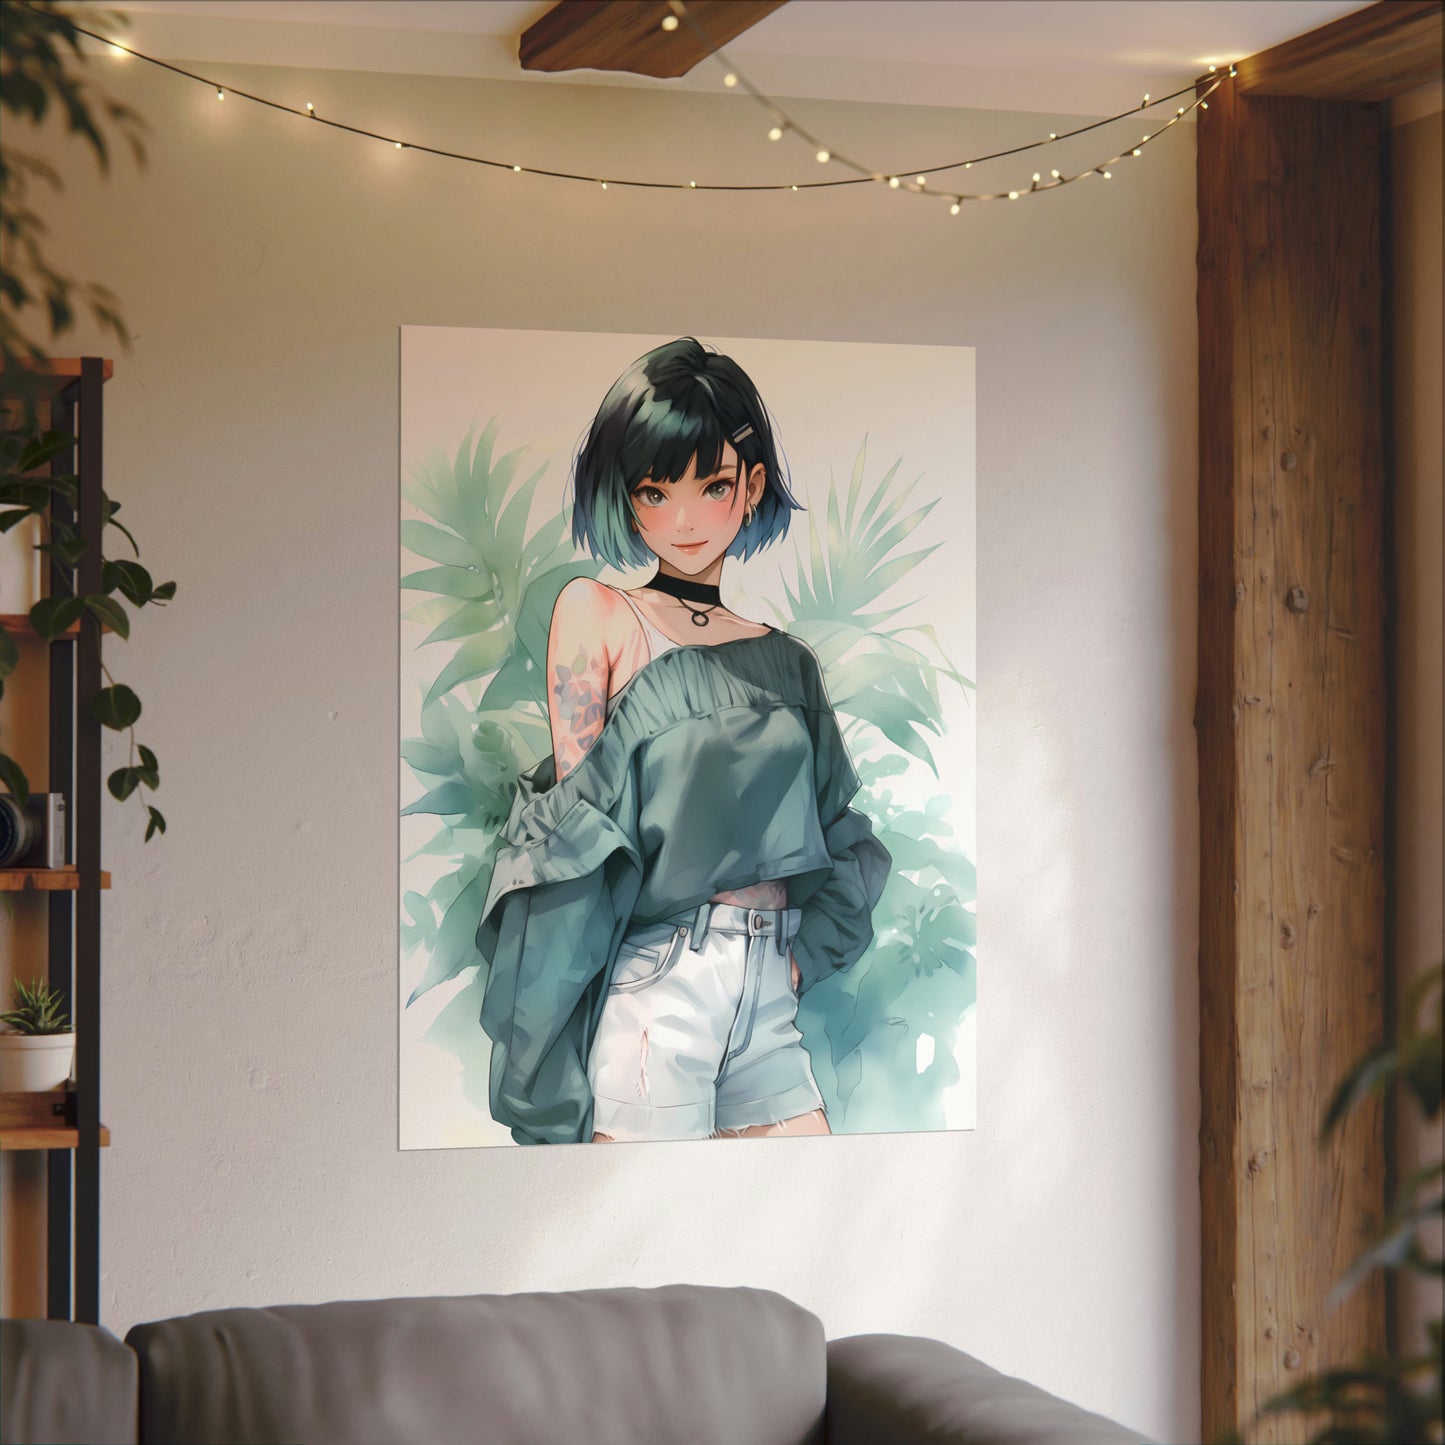 Verdant Escape - Anime Girl Watercolor Poster